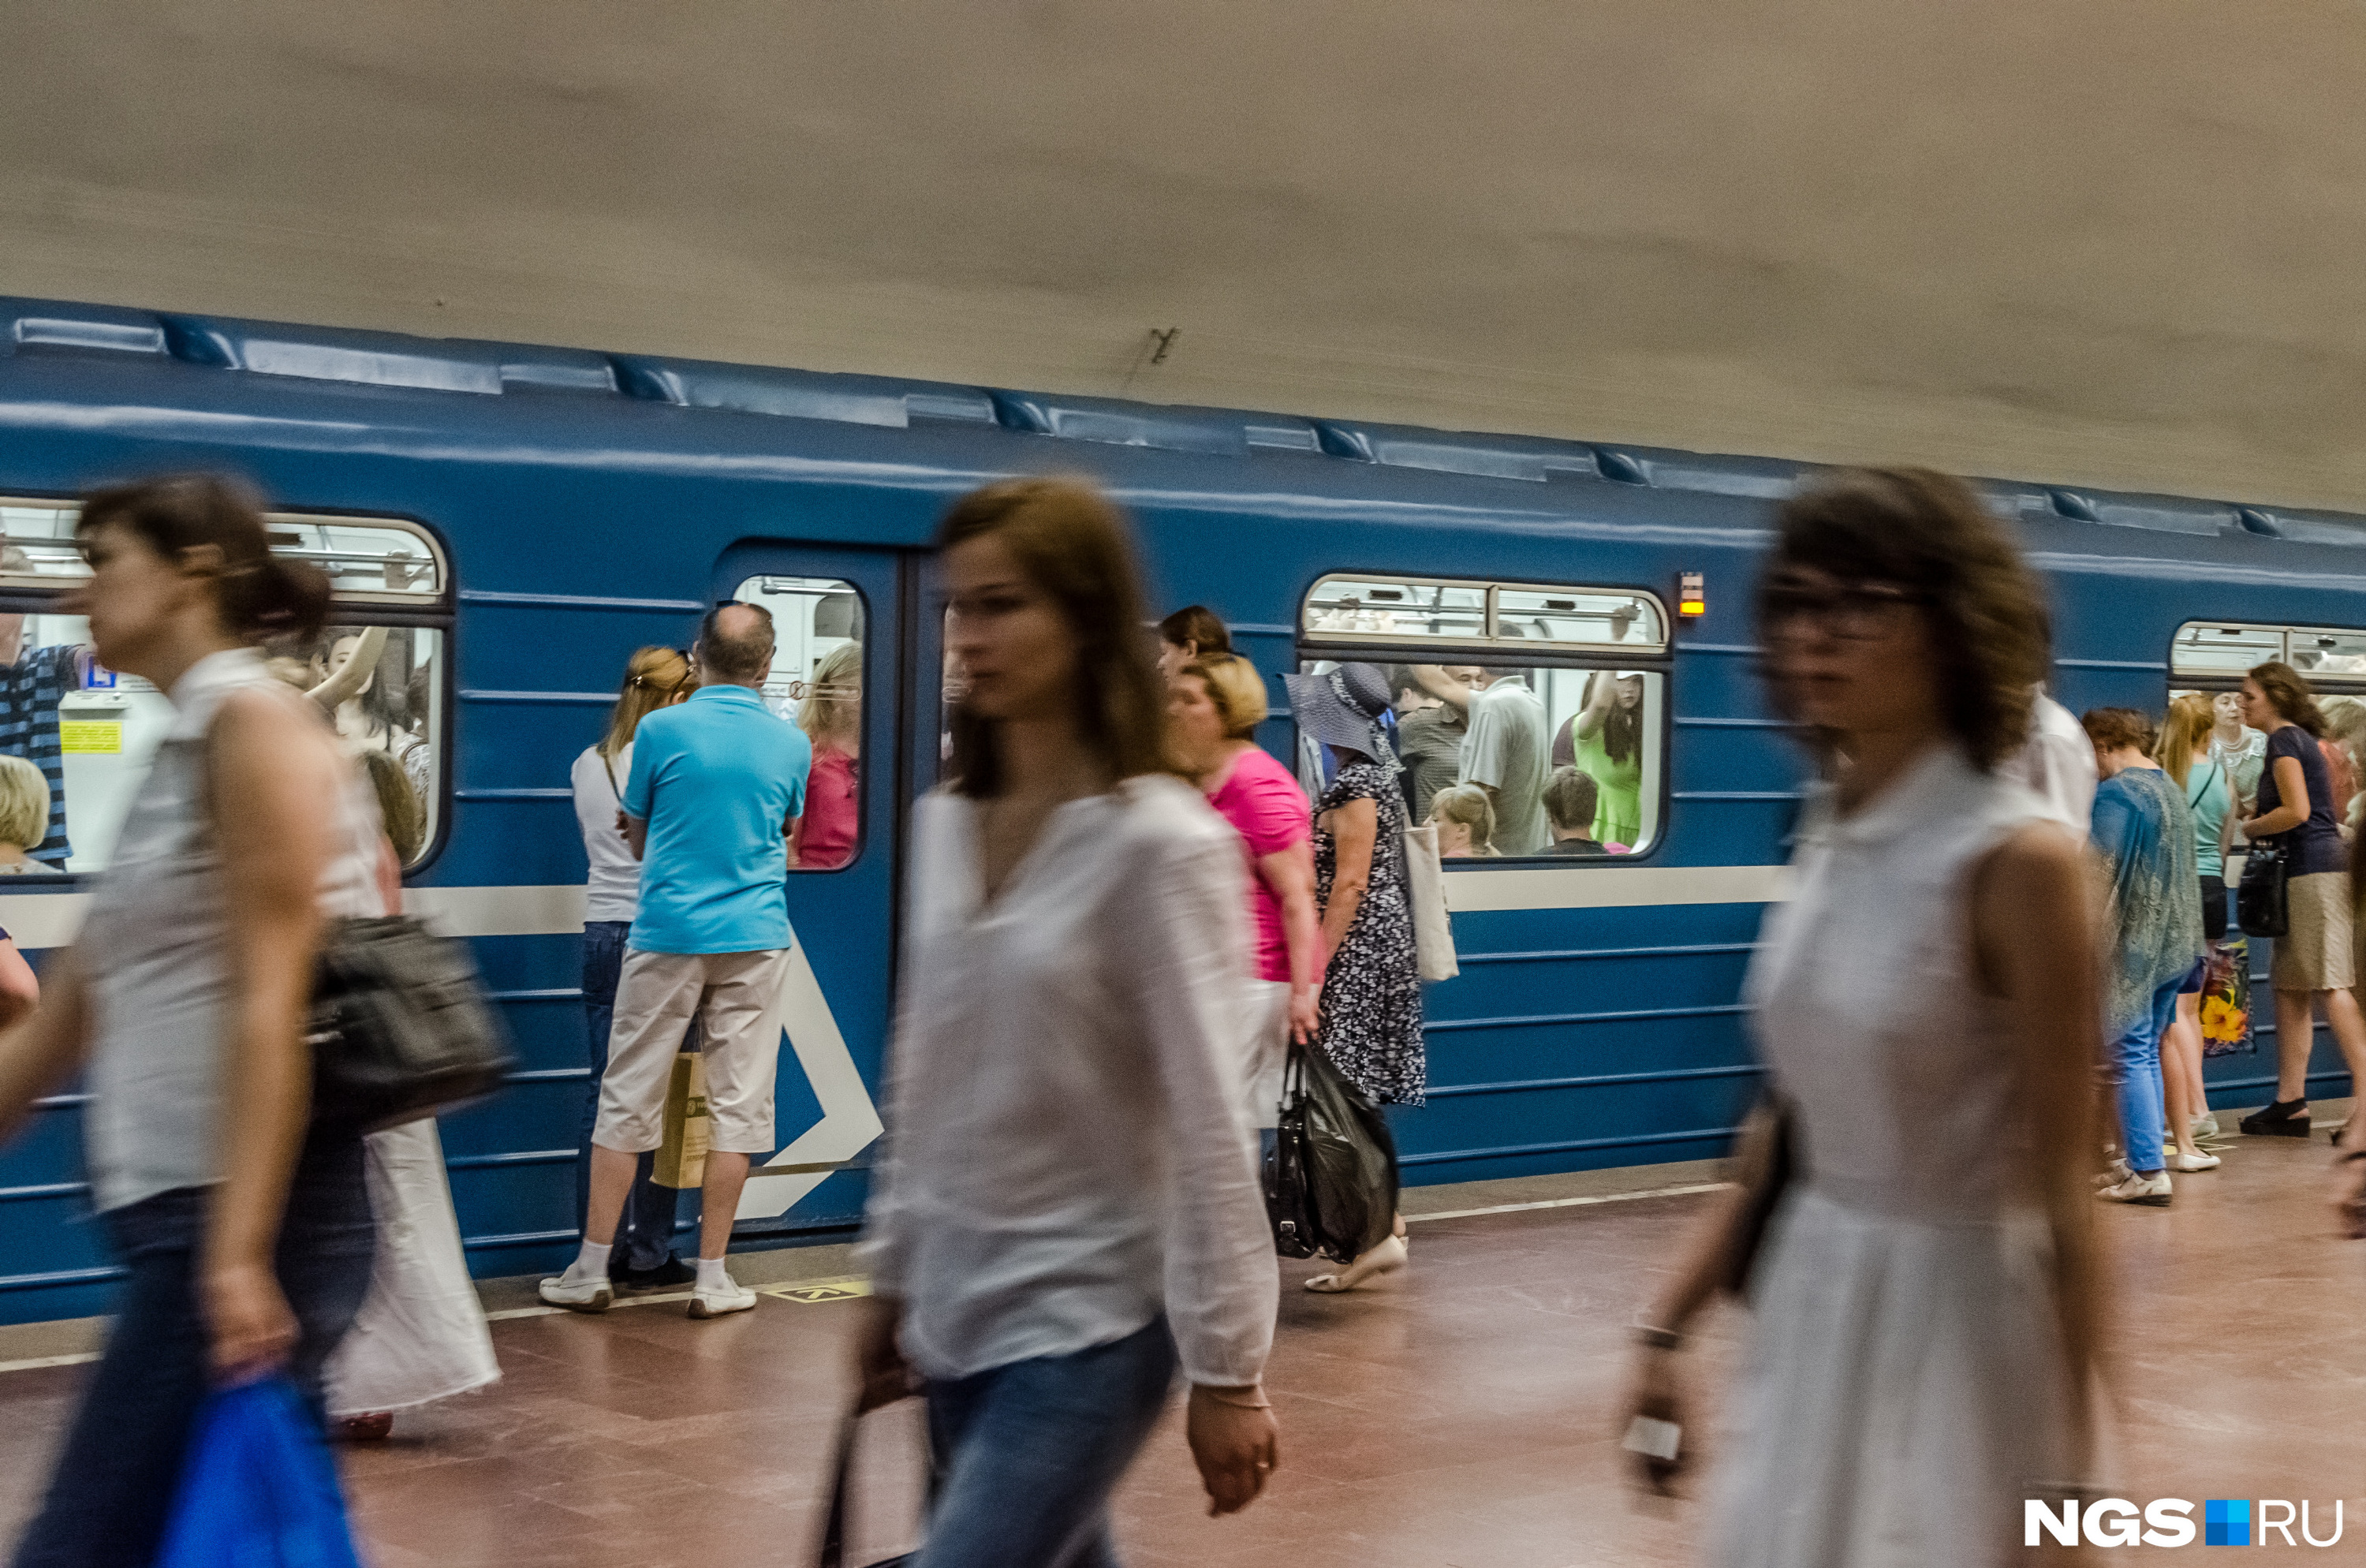 Срок эксплуатации вагонов метро после капитального ремонта продлевается на 15 лет